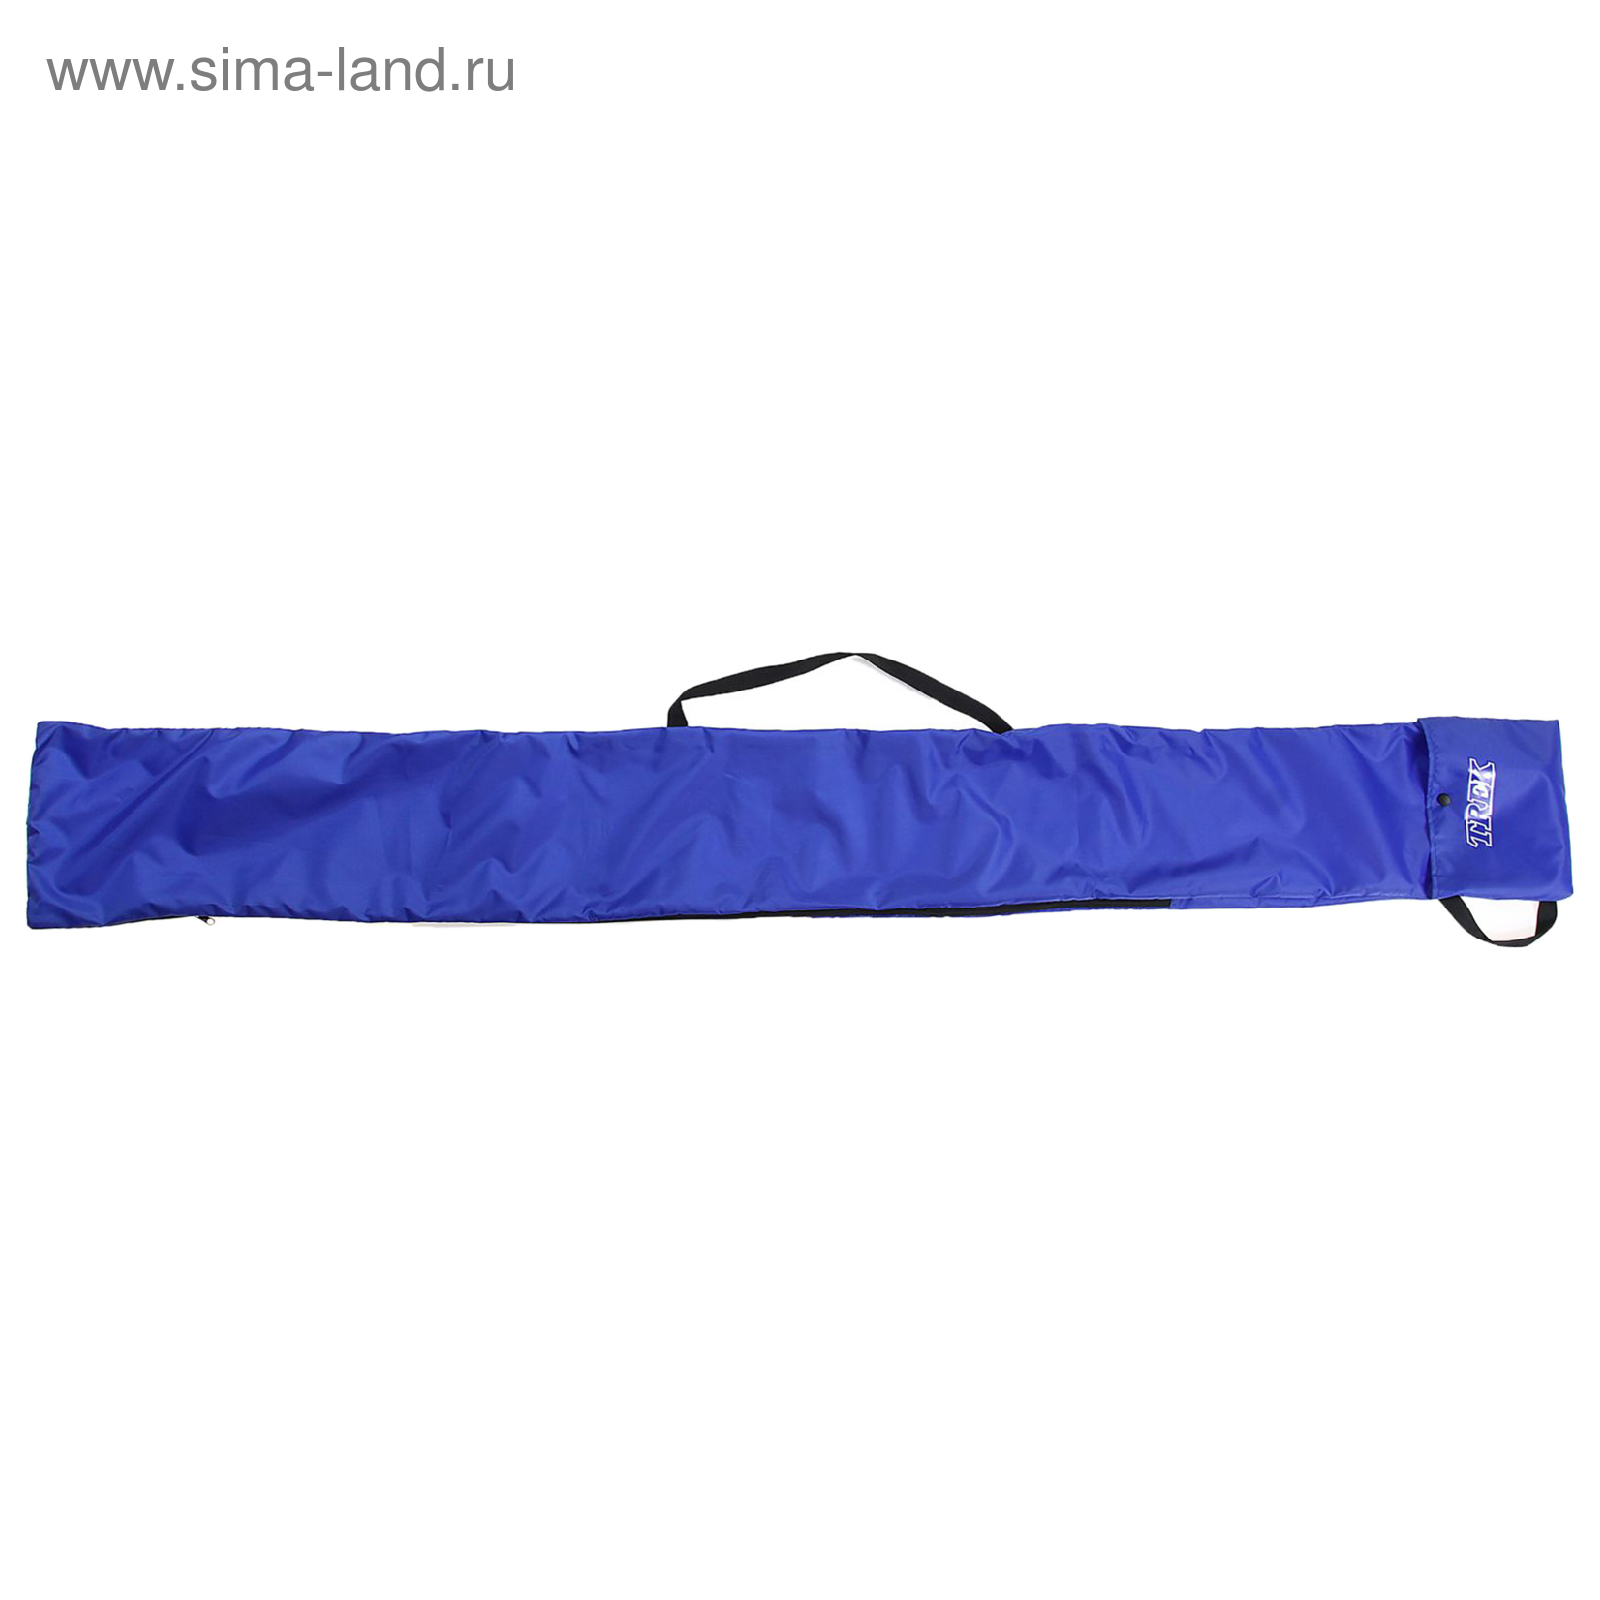 Чехол- сумка для беговых лыж 190см"